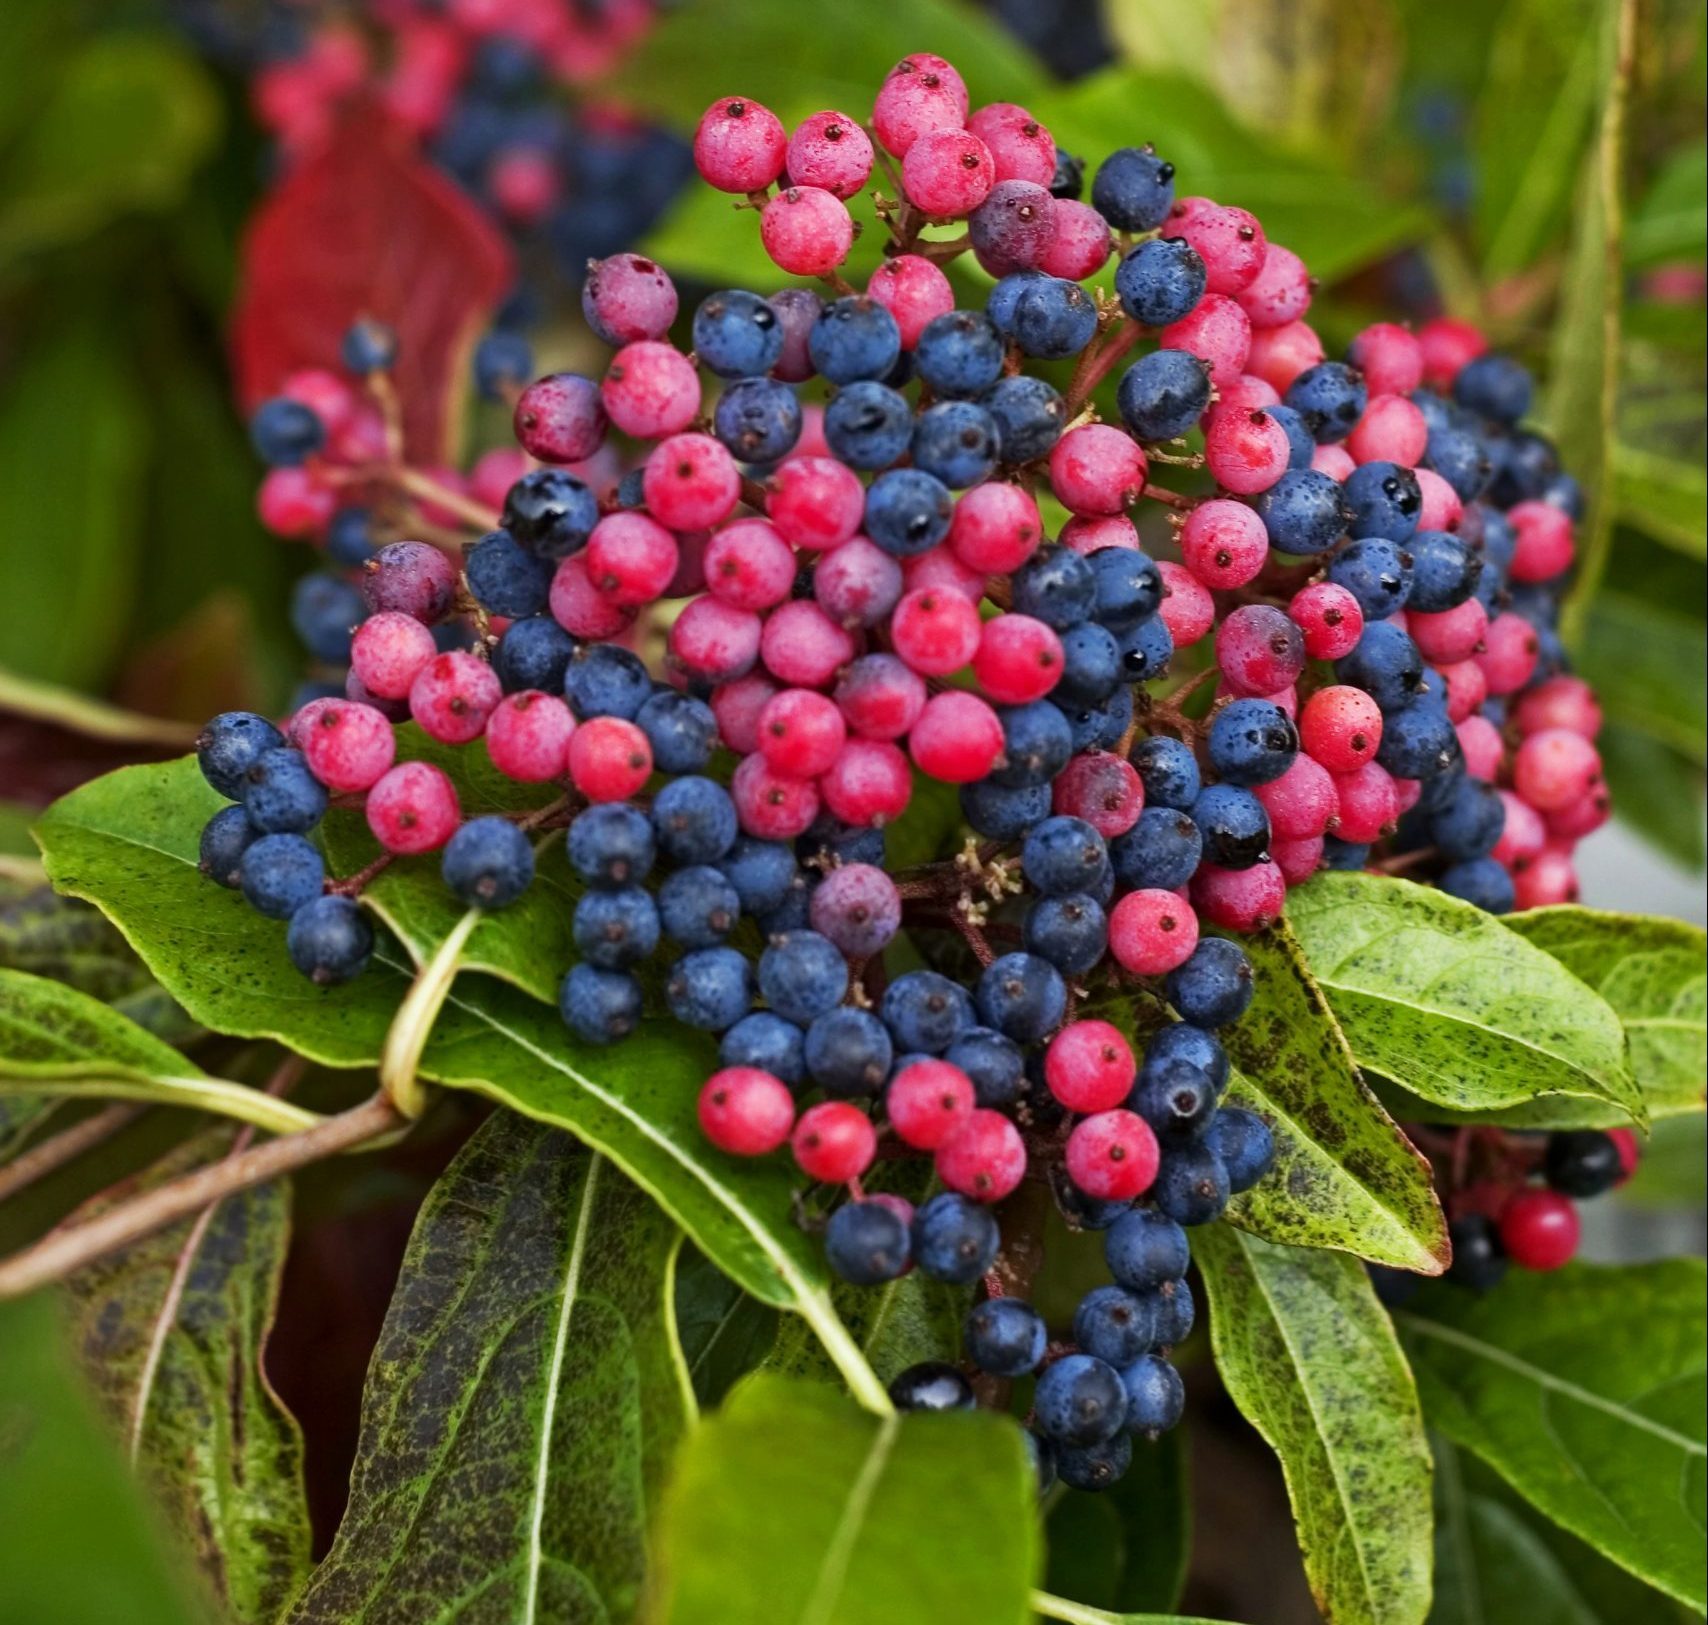 Grow Brandywine Viburnum for Tie-Dye Berry Clusters